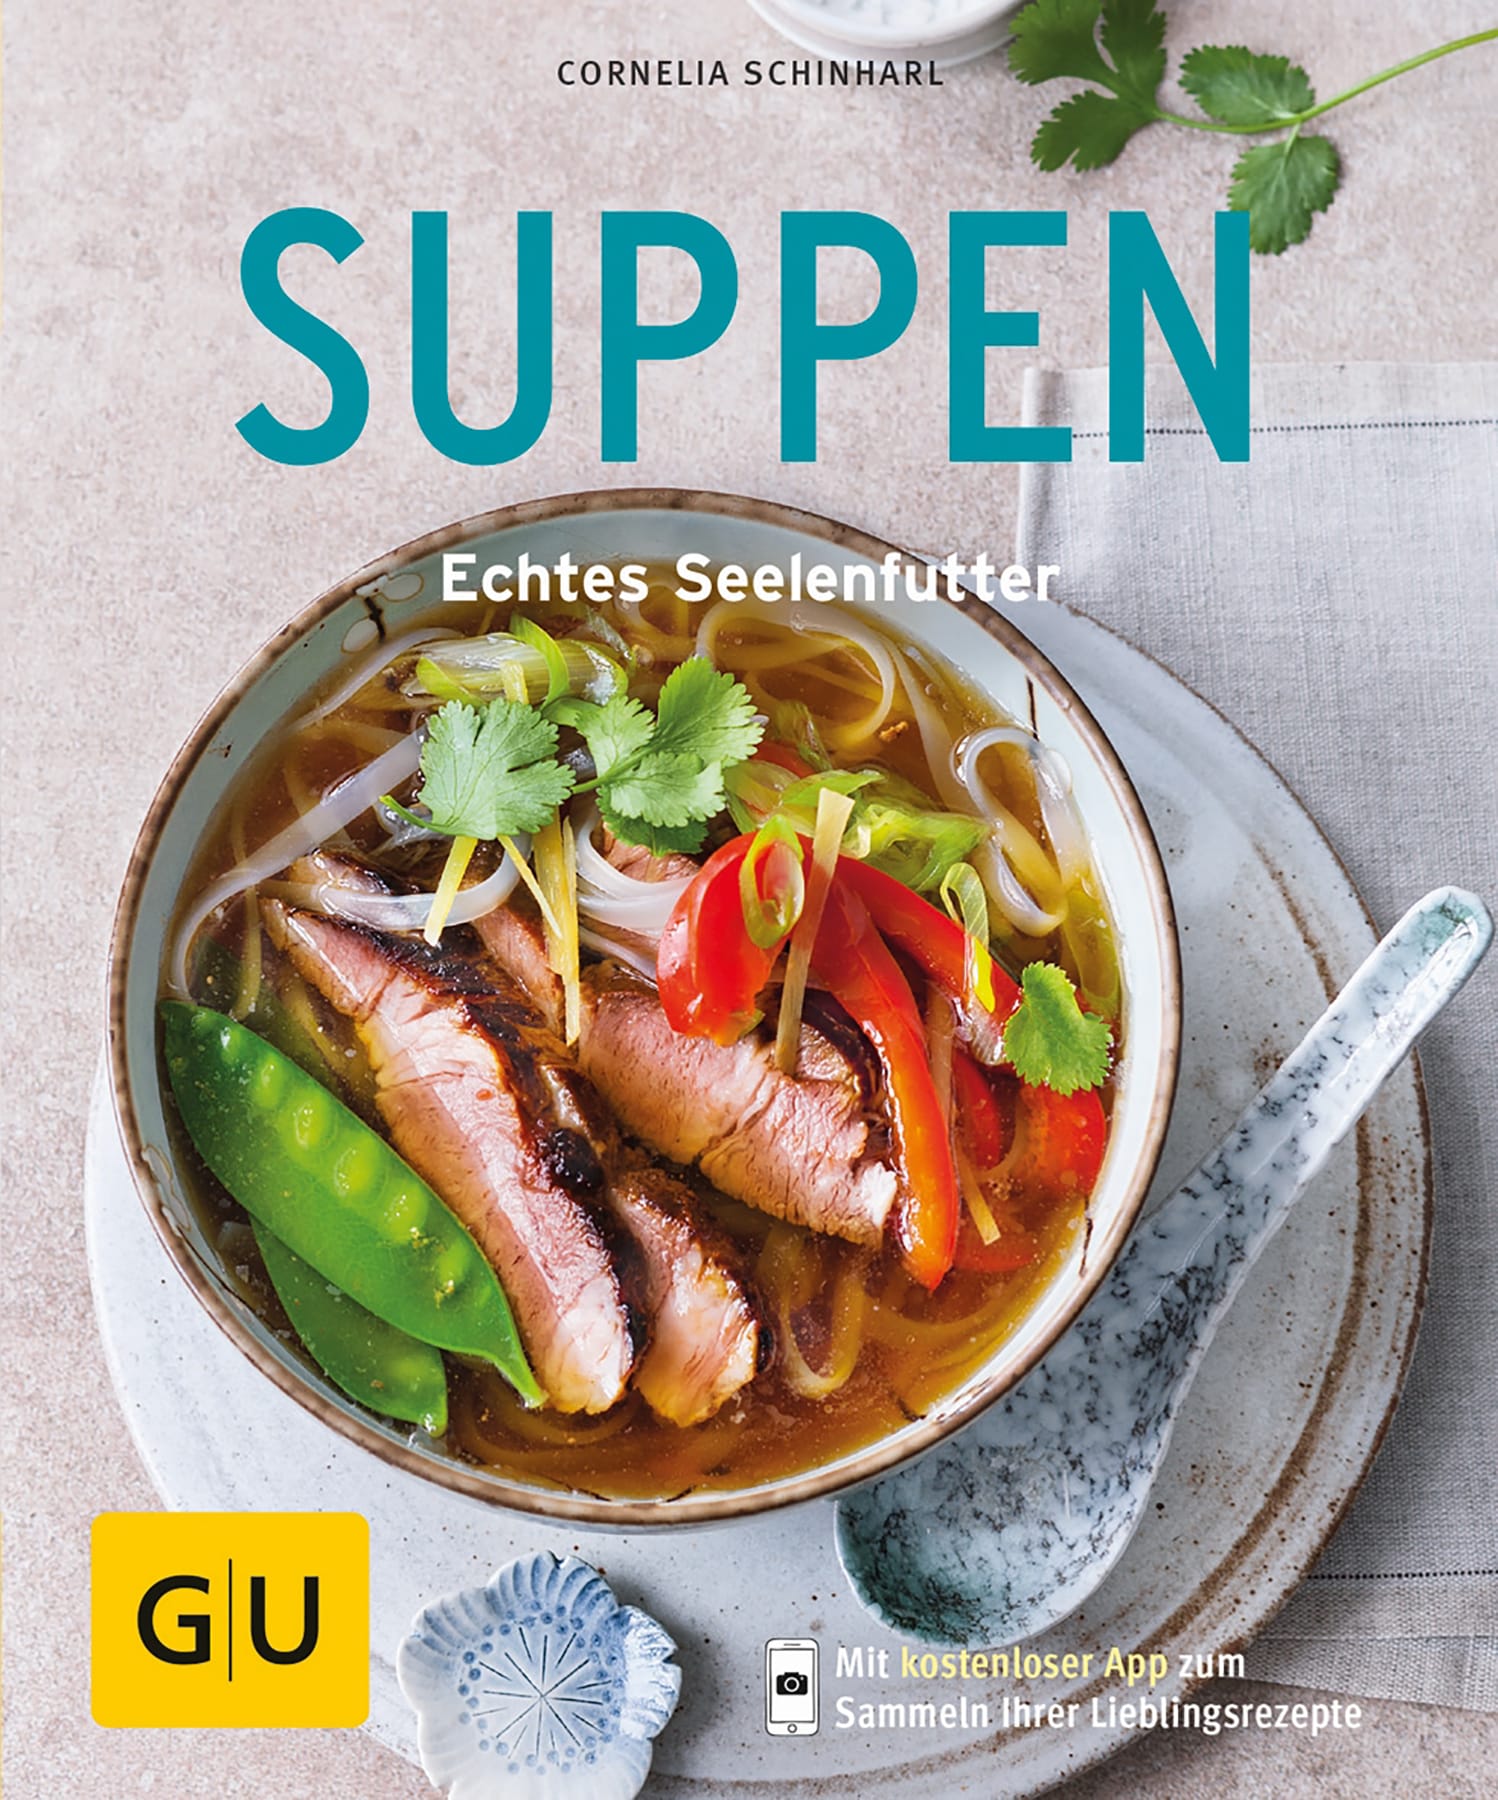 Das Buch von Cornelia Schinharl: Suppen: Echtes Seelenfutter ist in Läden erhältlich.